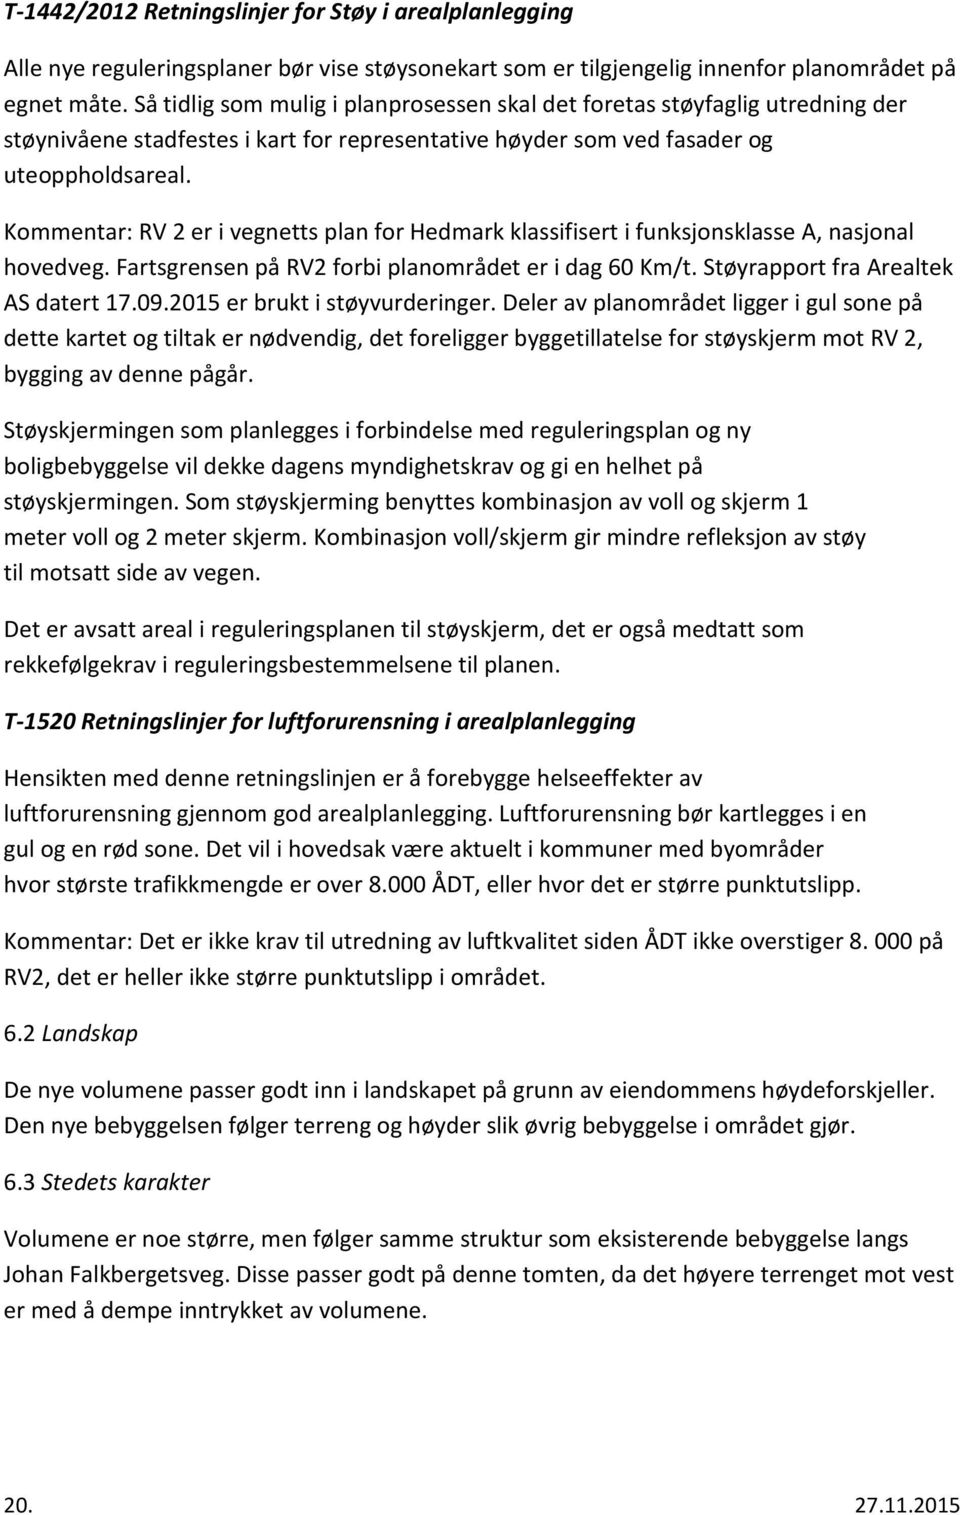 Kommentar: RV 2 er i vegnetts plan for Hedmark klassifisert i funksjonsklasse A, nasjonal hovedveg. Fartsgrensen på RV2 forbi planområdet er i dag 60 Km/t. Støyrapport fra Arealtek AS datert 17.09.